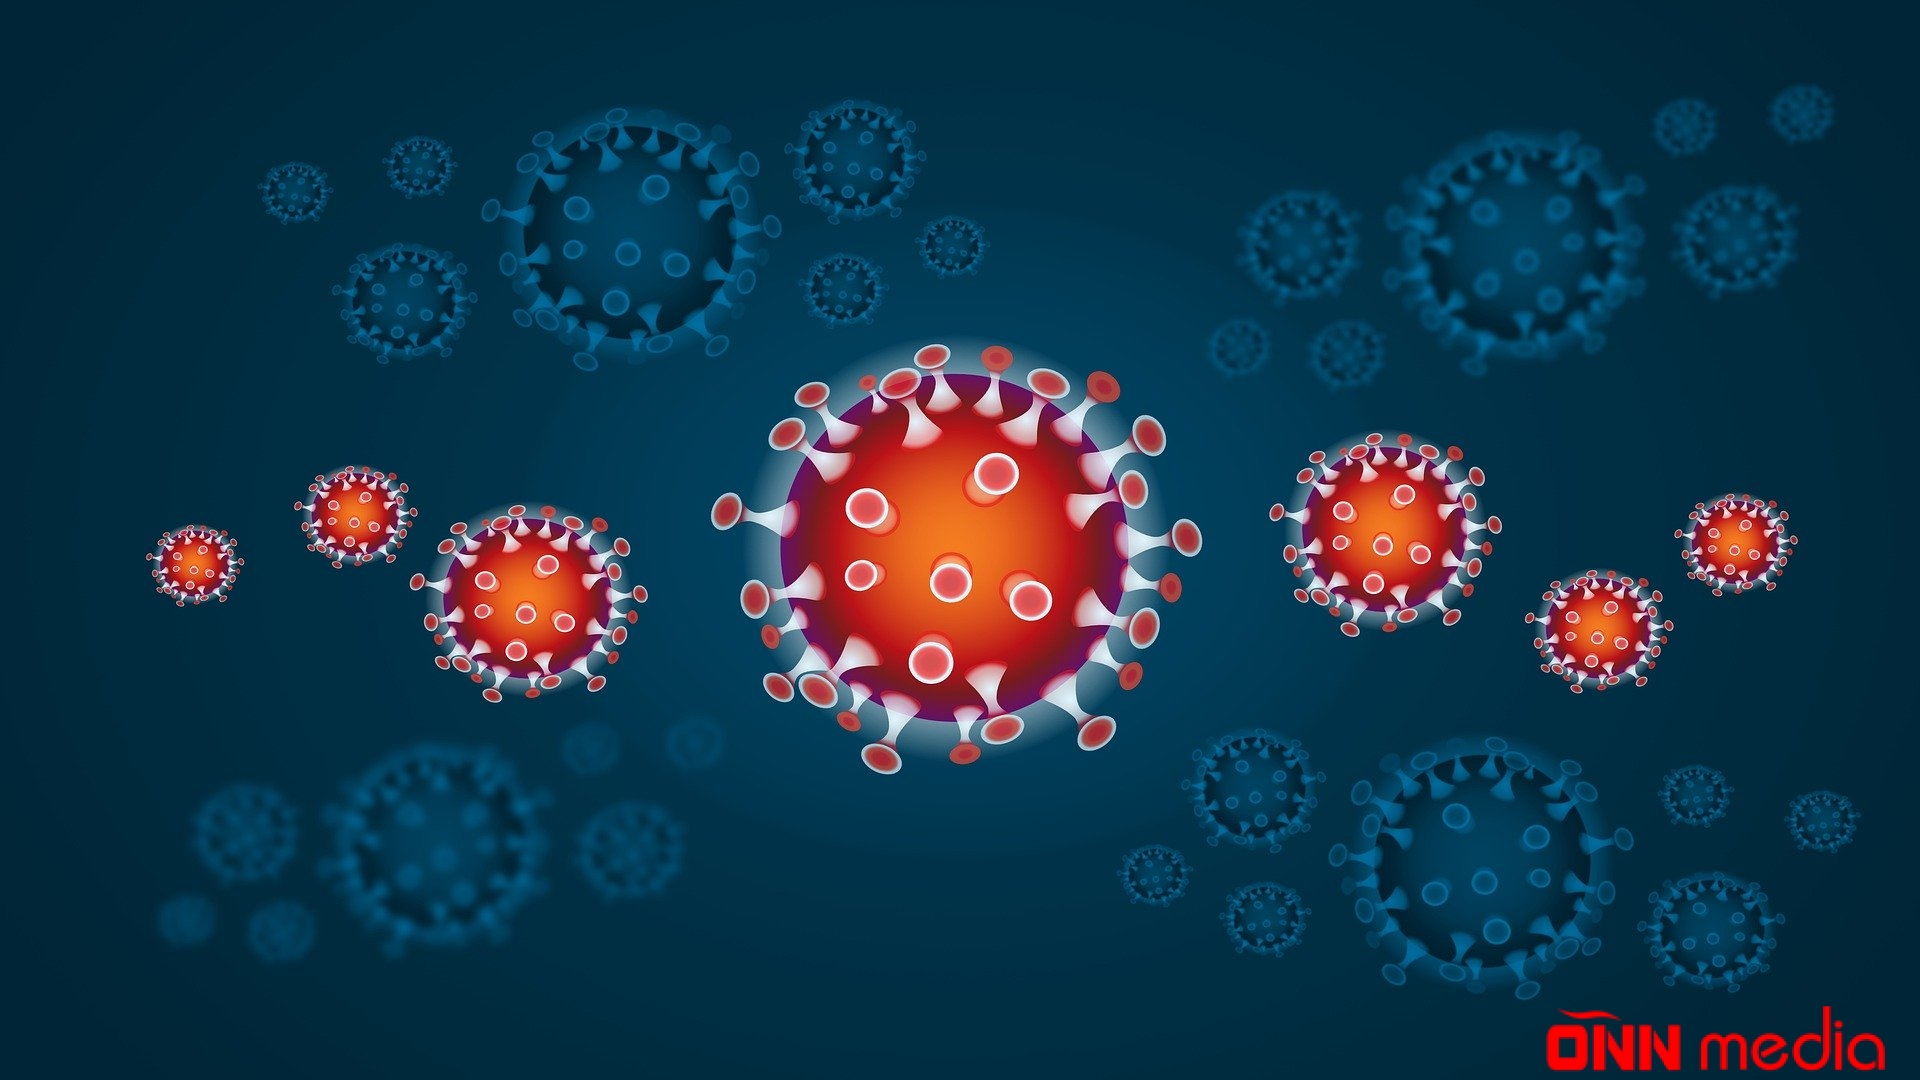 Koronavirusa yoluxanların sayı açıqlandı